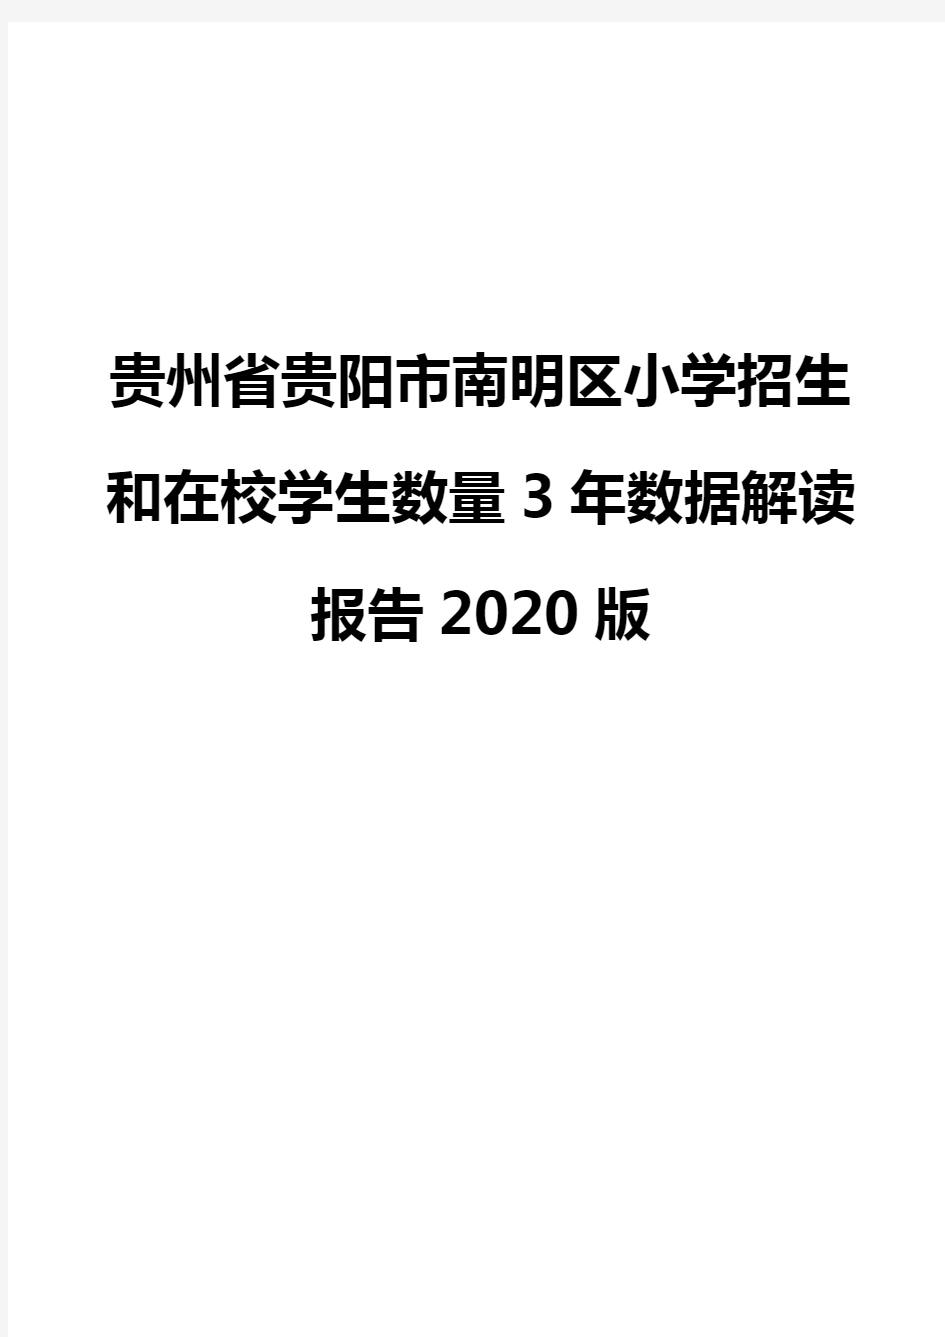 贵州省贵阳市南明区小学招生和在校学生数量3年数据解读报告2020版